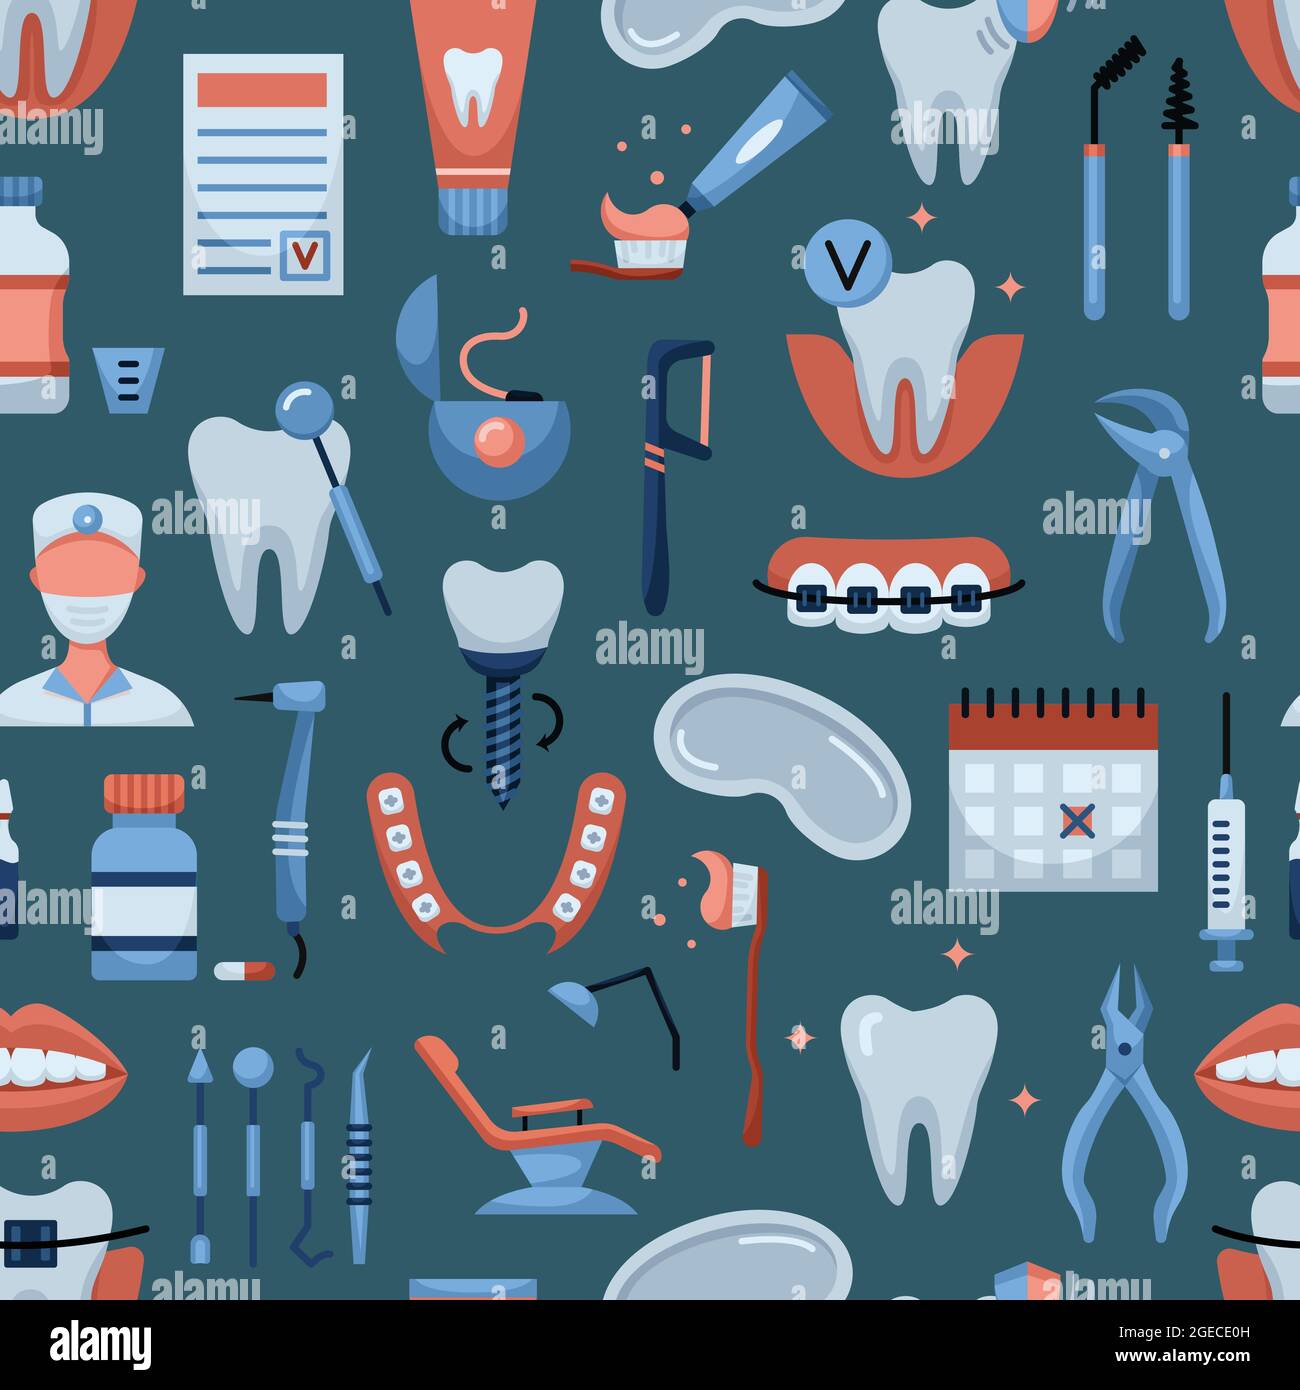 Dental tools Vectors & Illustrations for Free Download